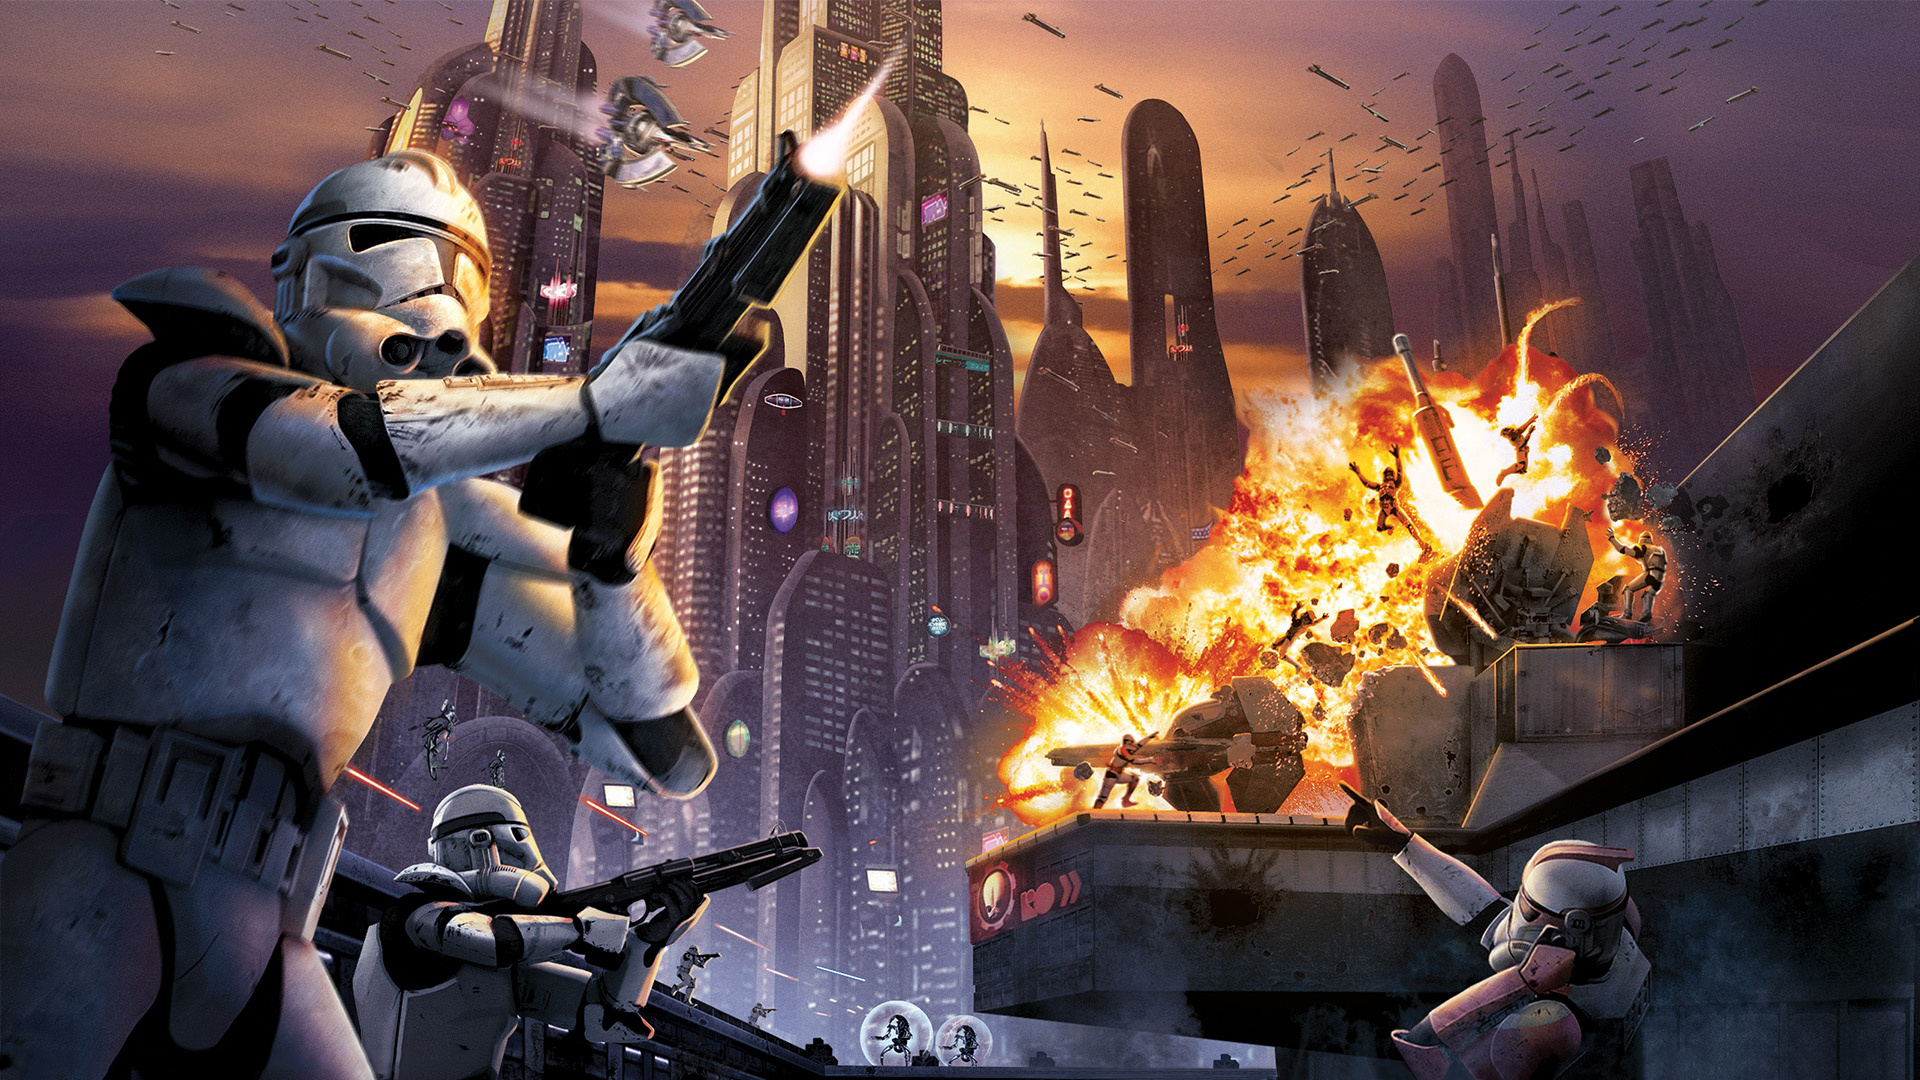 Descargar fondos de escritorio de Star Wars Battlefront: Escuadrón De Élite HD